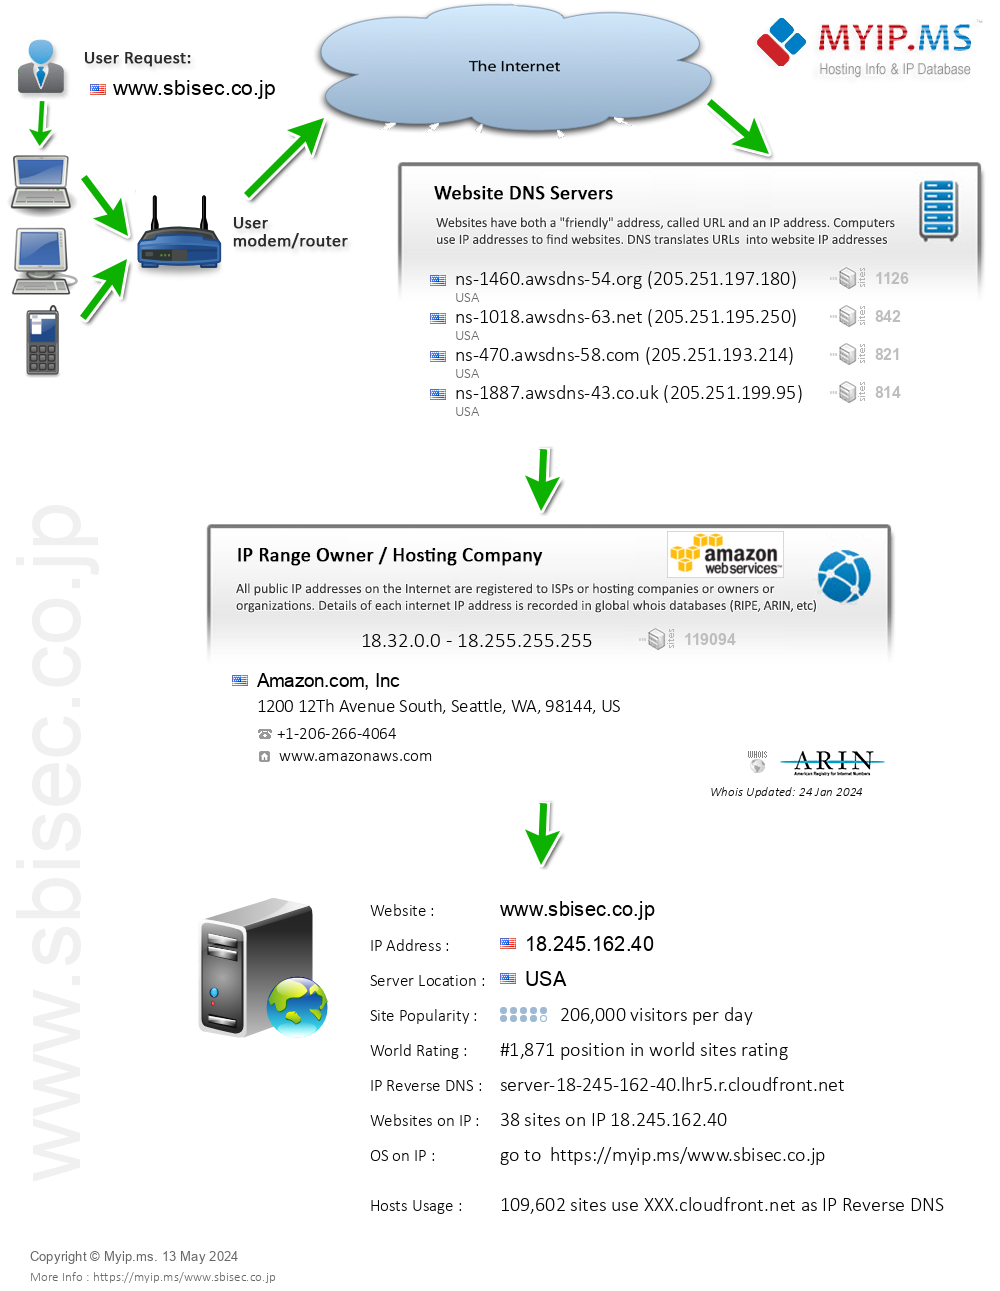 Sbisec.co.jp - Website Hosting Visual IP Diagram